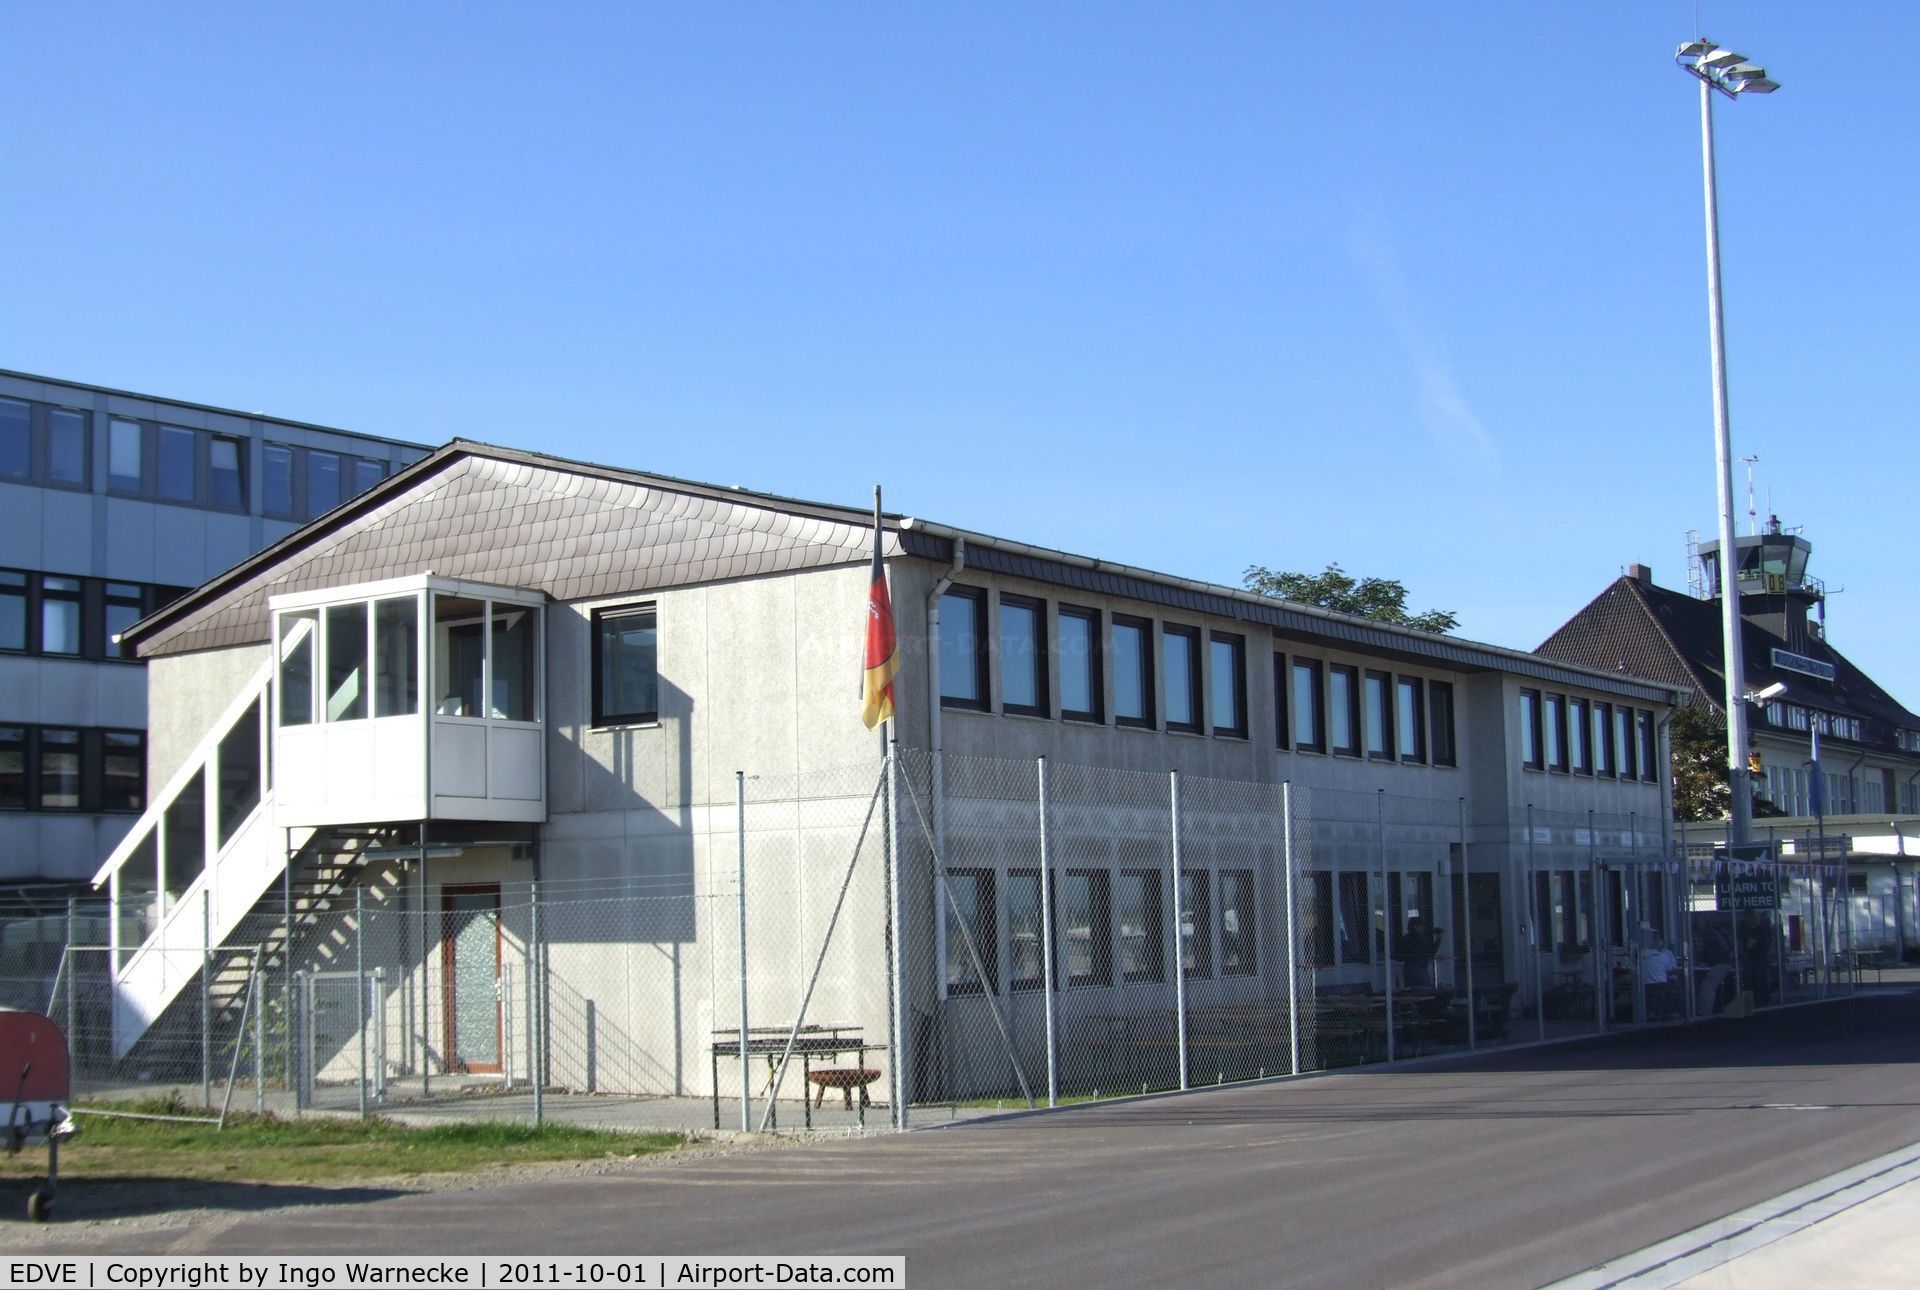 Braunschweig-Wolfsburg Regional Airport, Braunschweig, Lower Saxony Germany (EDVE) - the building of Aerowest flying school at Braunschweig-Waggum airport